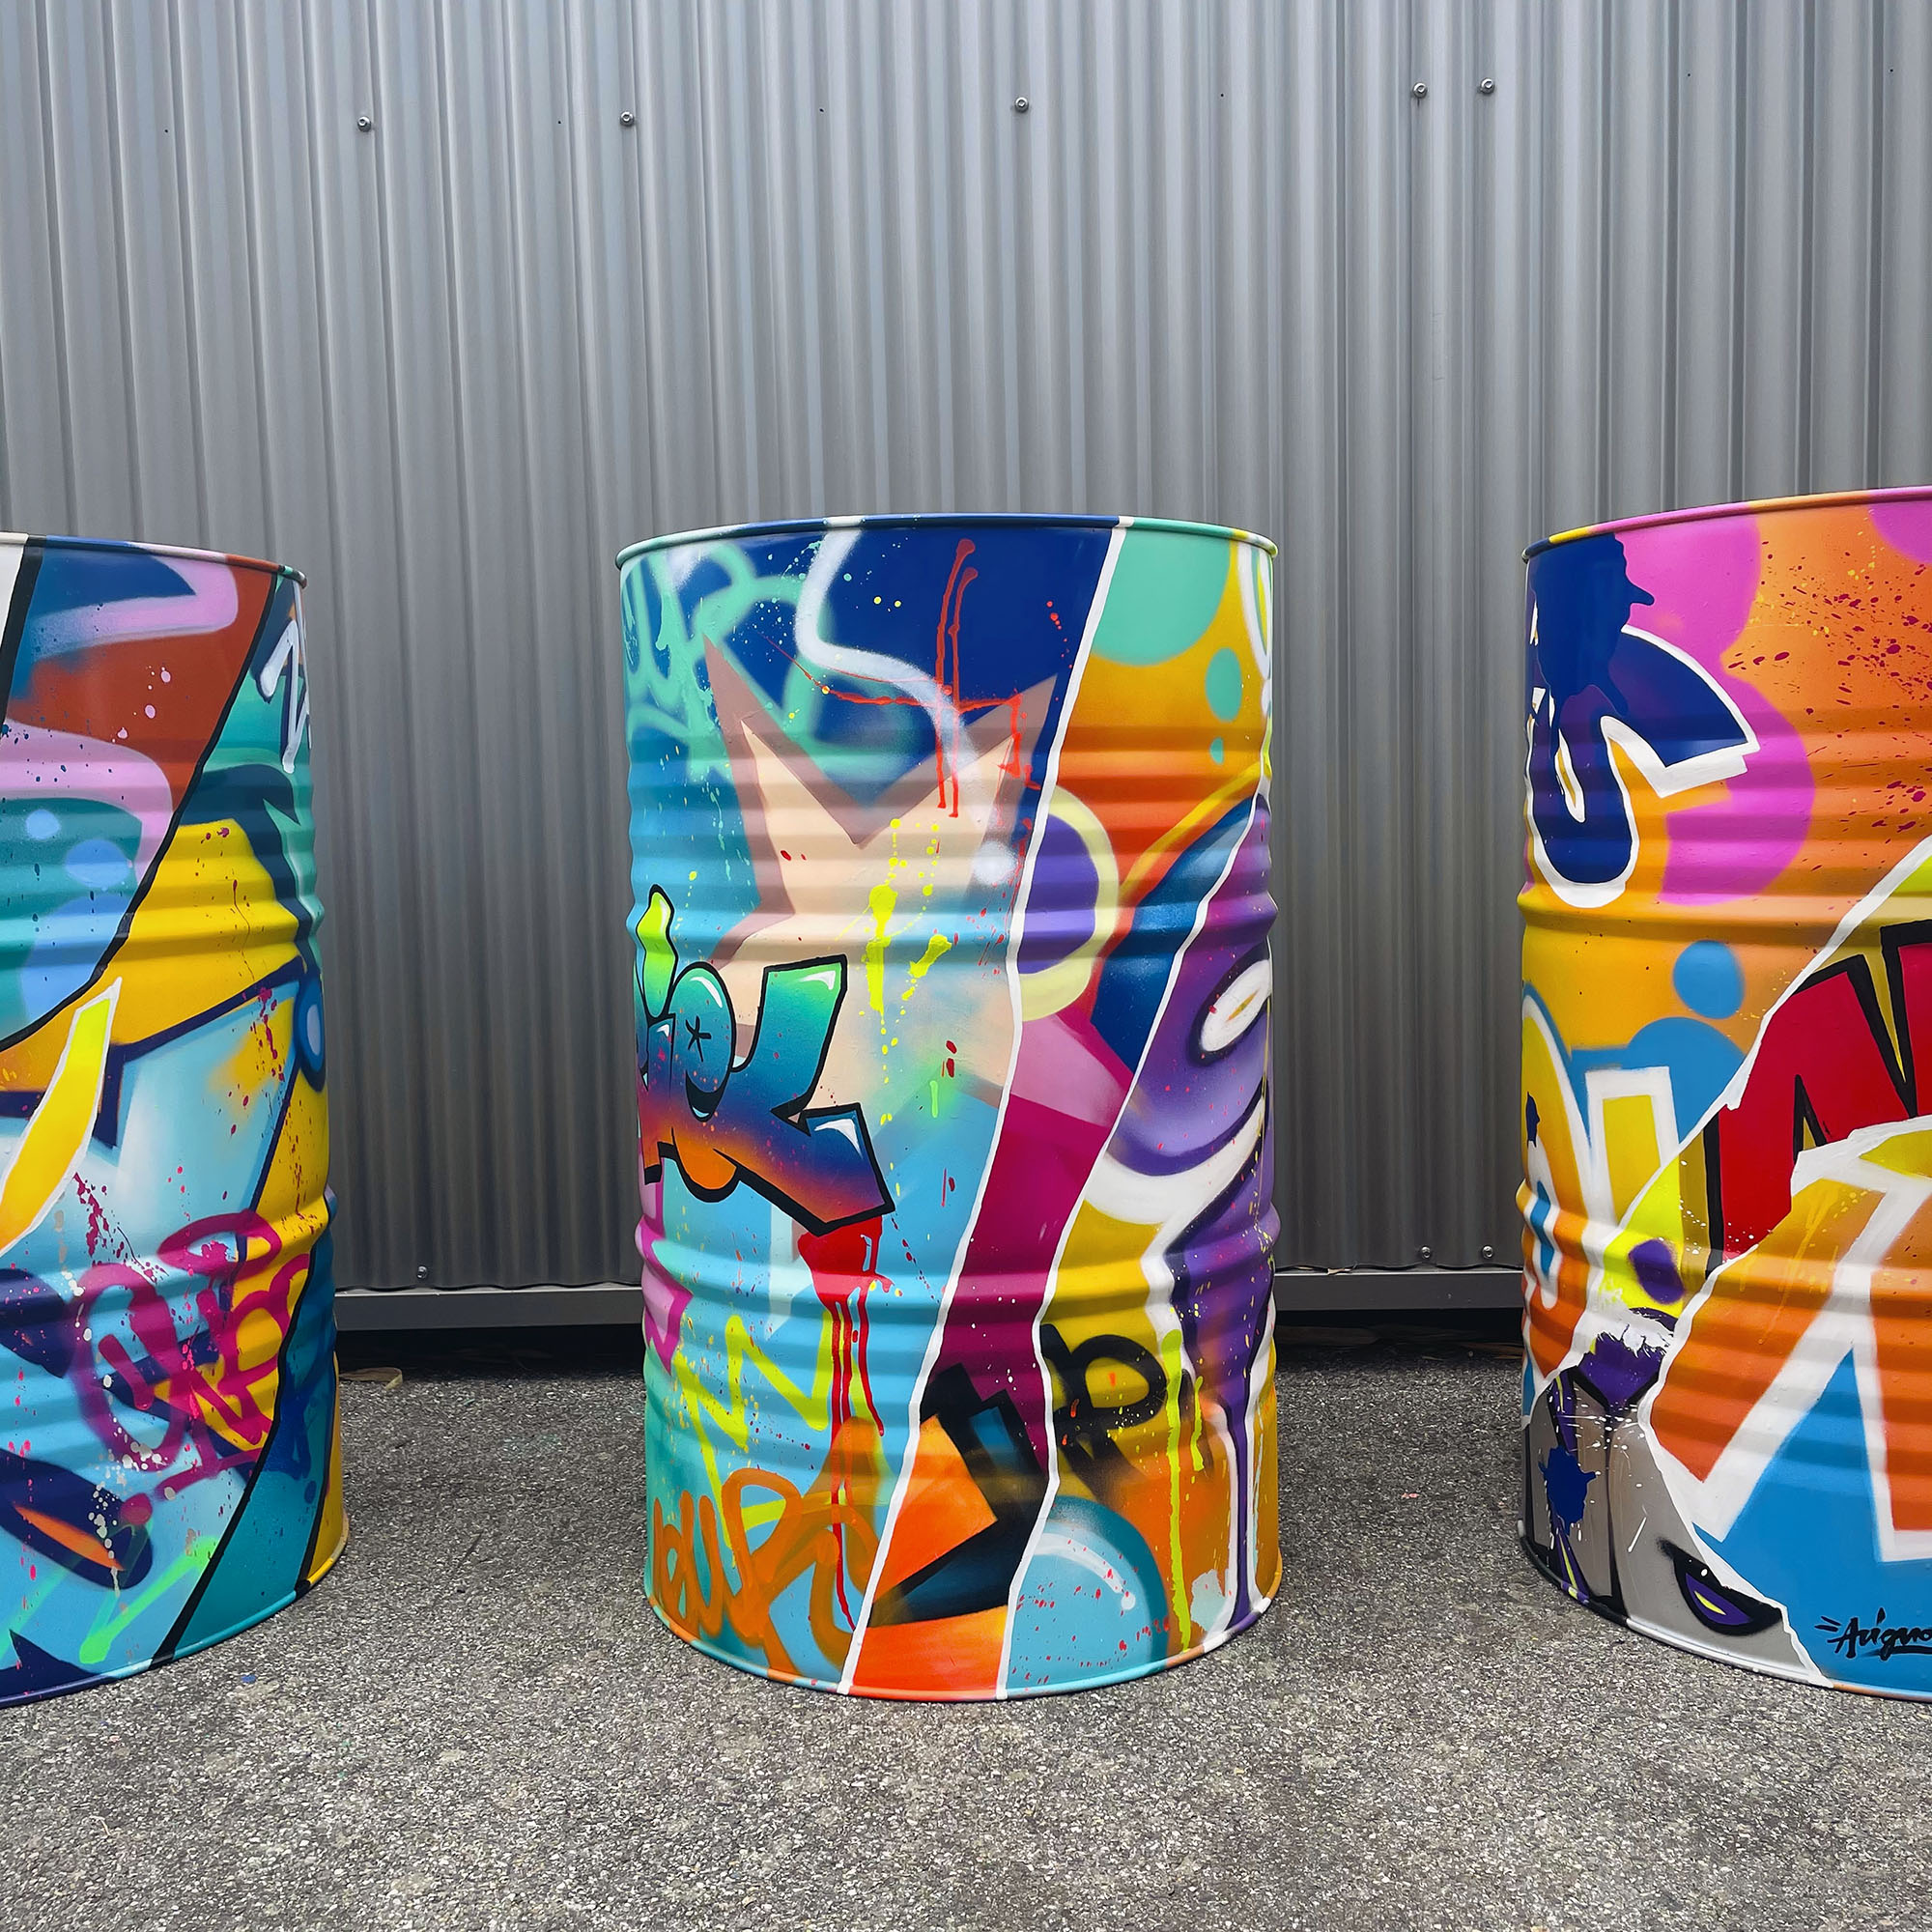 UNE-fut-futs-custom-graffiti-tag-street-art-decoration-deco-WEB